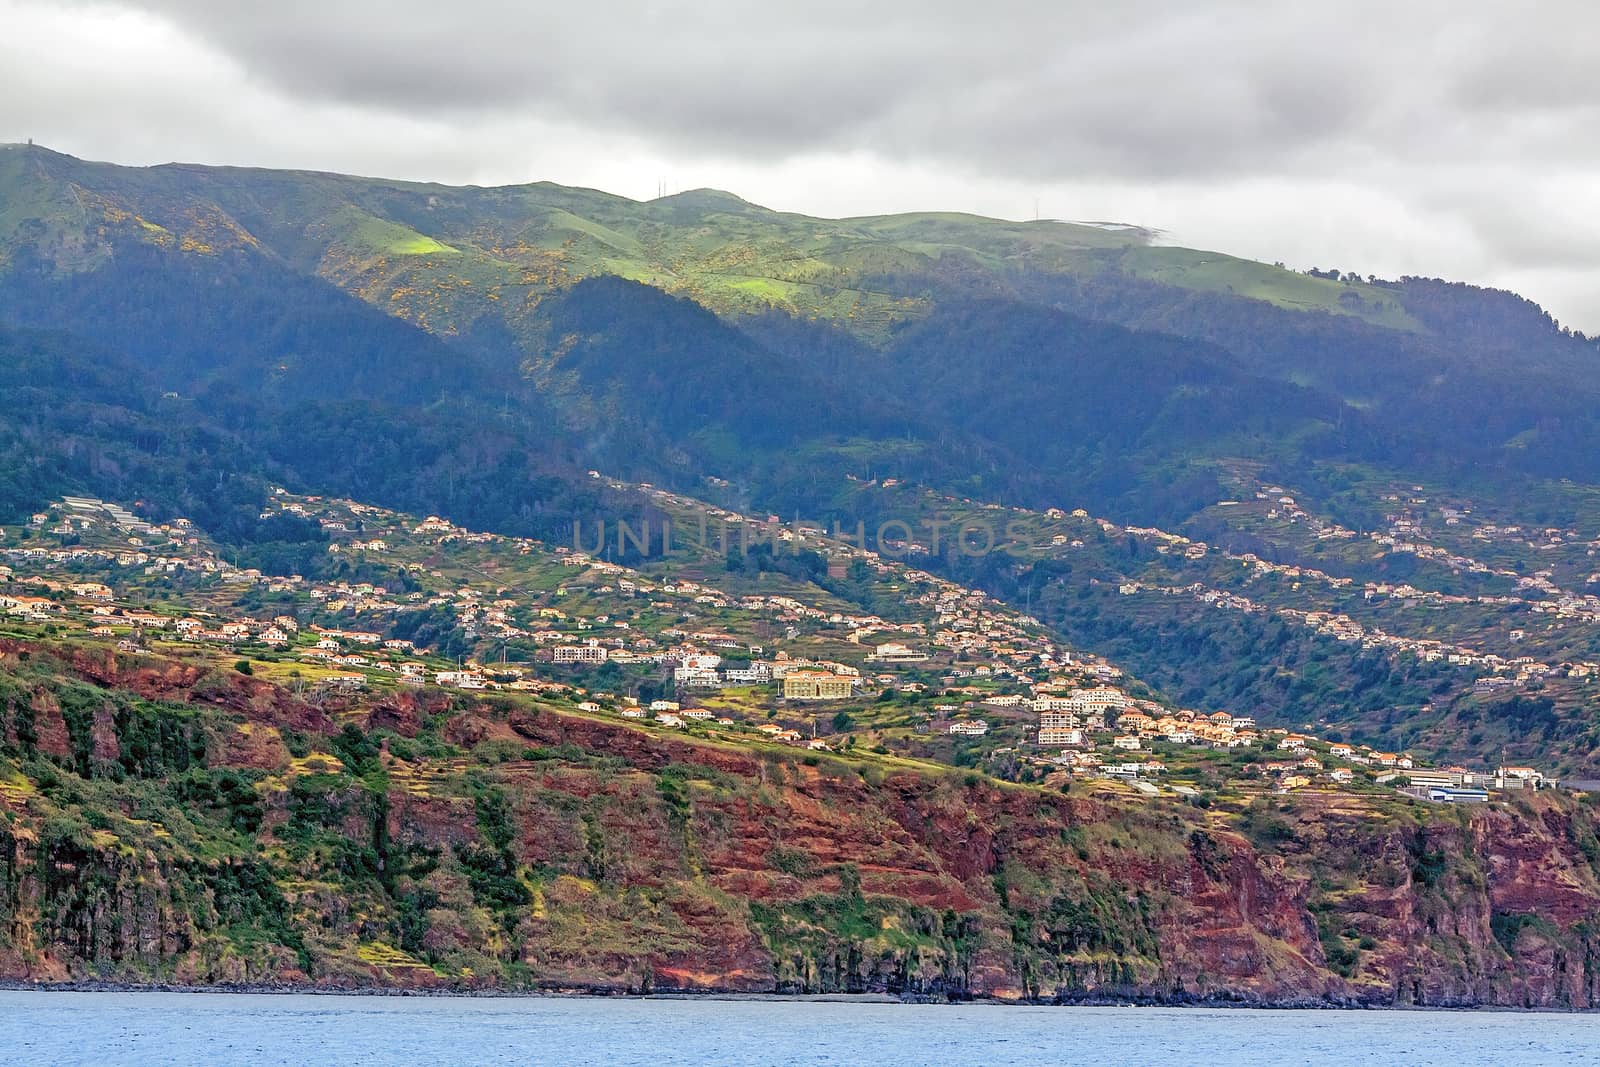 Near Jardim do Mar, Madeira - offshore view